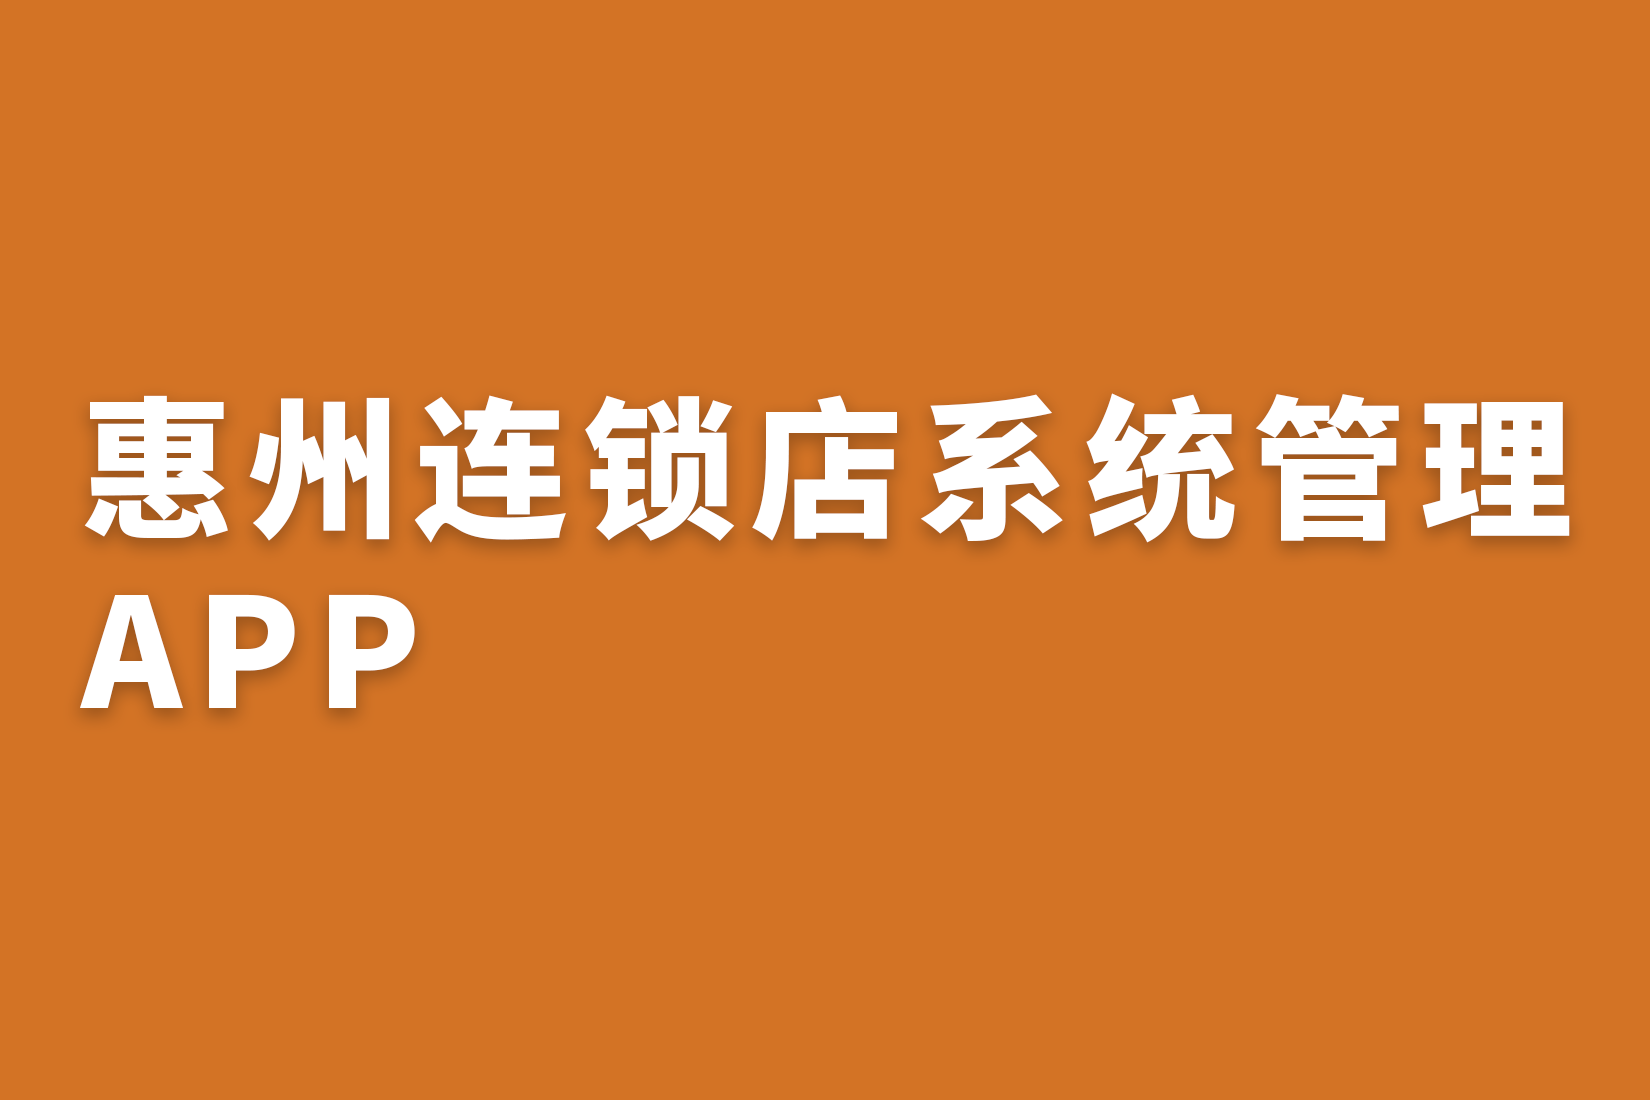 惠州连锁店系统管理APP?